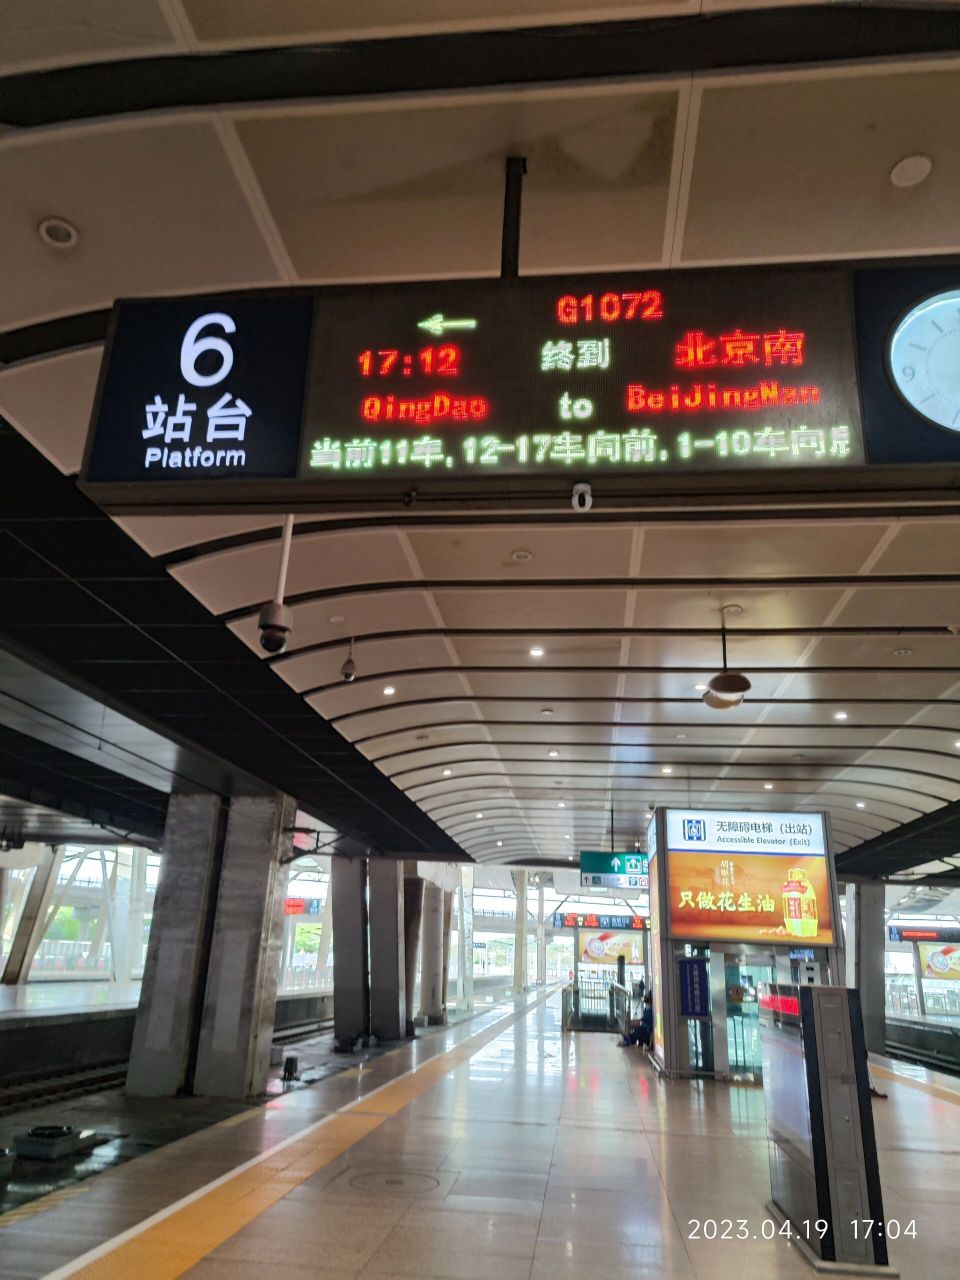 北京南站进站台接人攻略  被接人需要满足条件:老幼病残孕之一; 接人